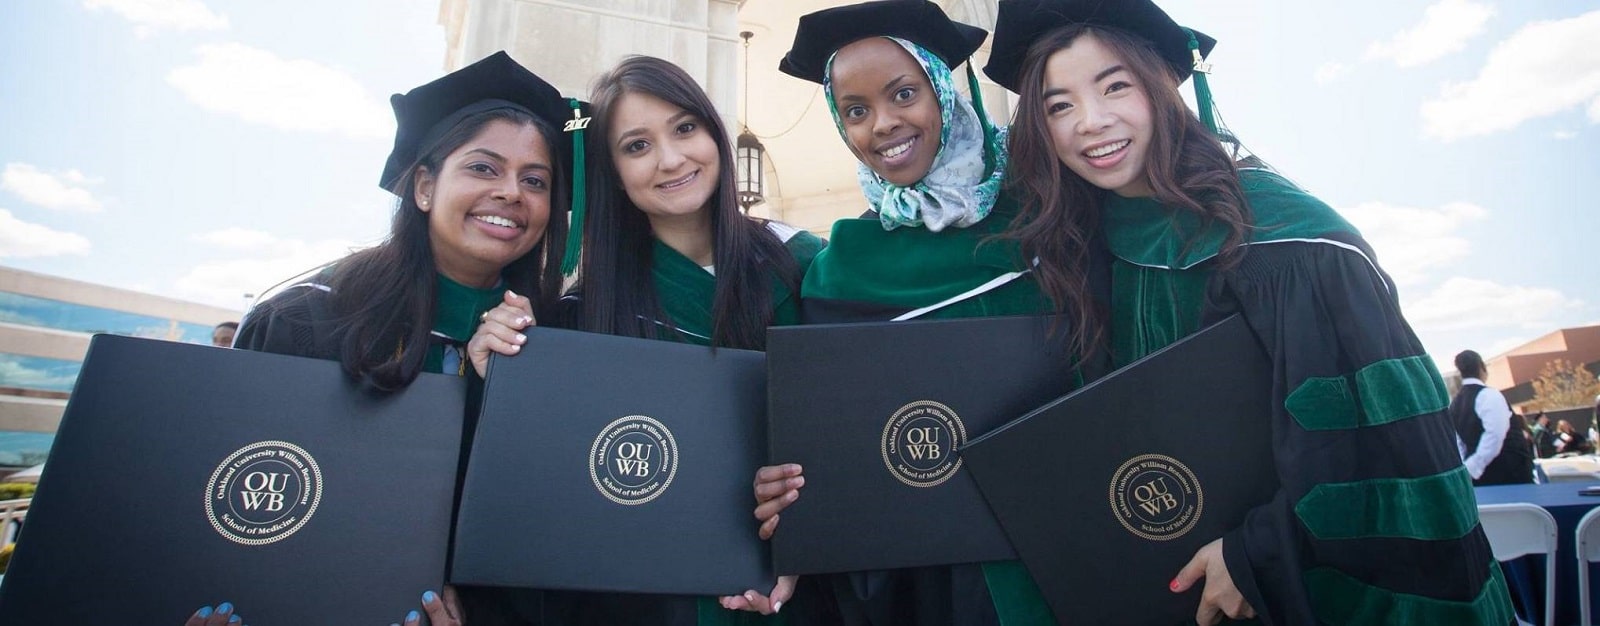 四个新OUWB毕业生站在艾略特塔戴学位帽和学位服,拿着他们的文凭。